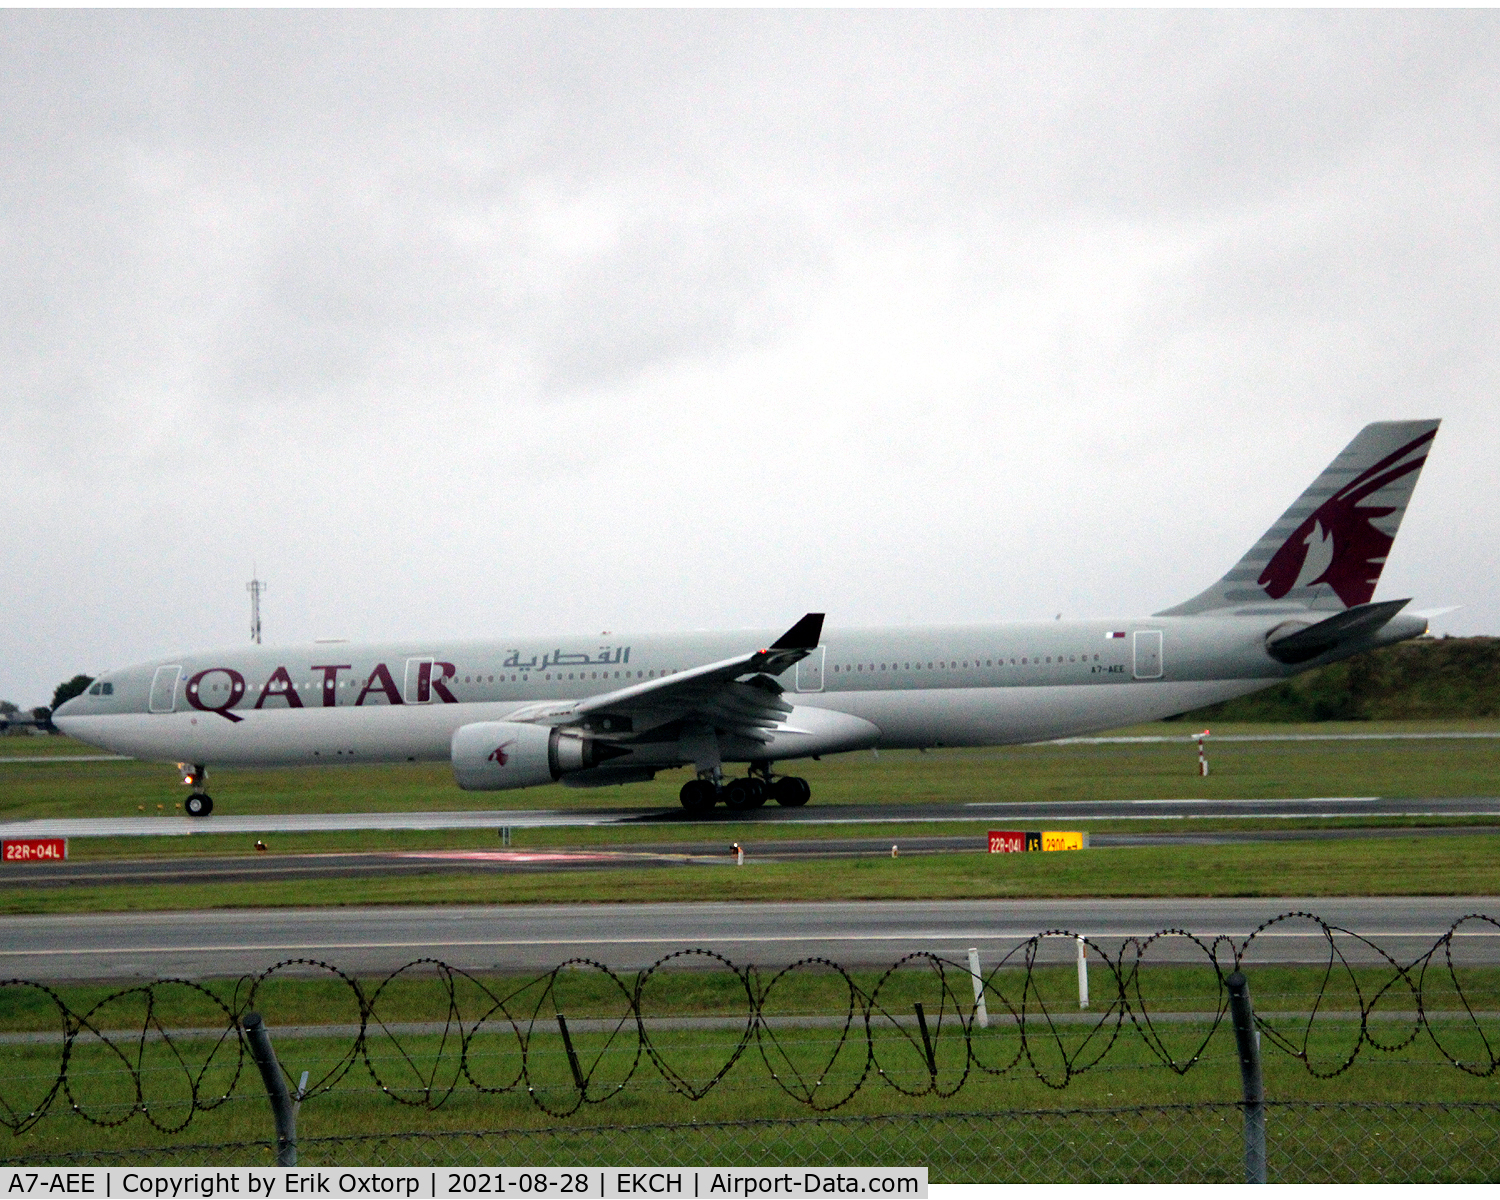 A7-AEE, 2005 Airbus A330-302 C/N 711, A7-AEE landed rw 04L